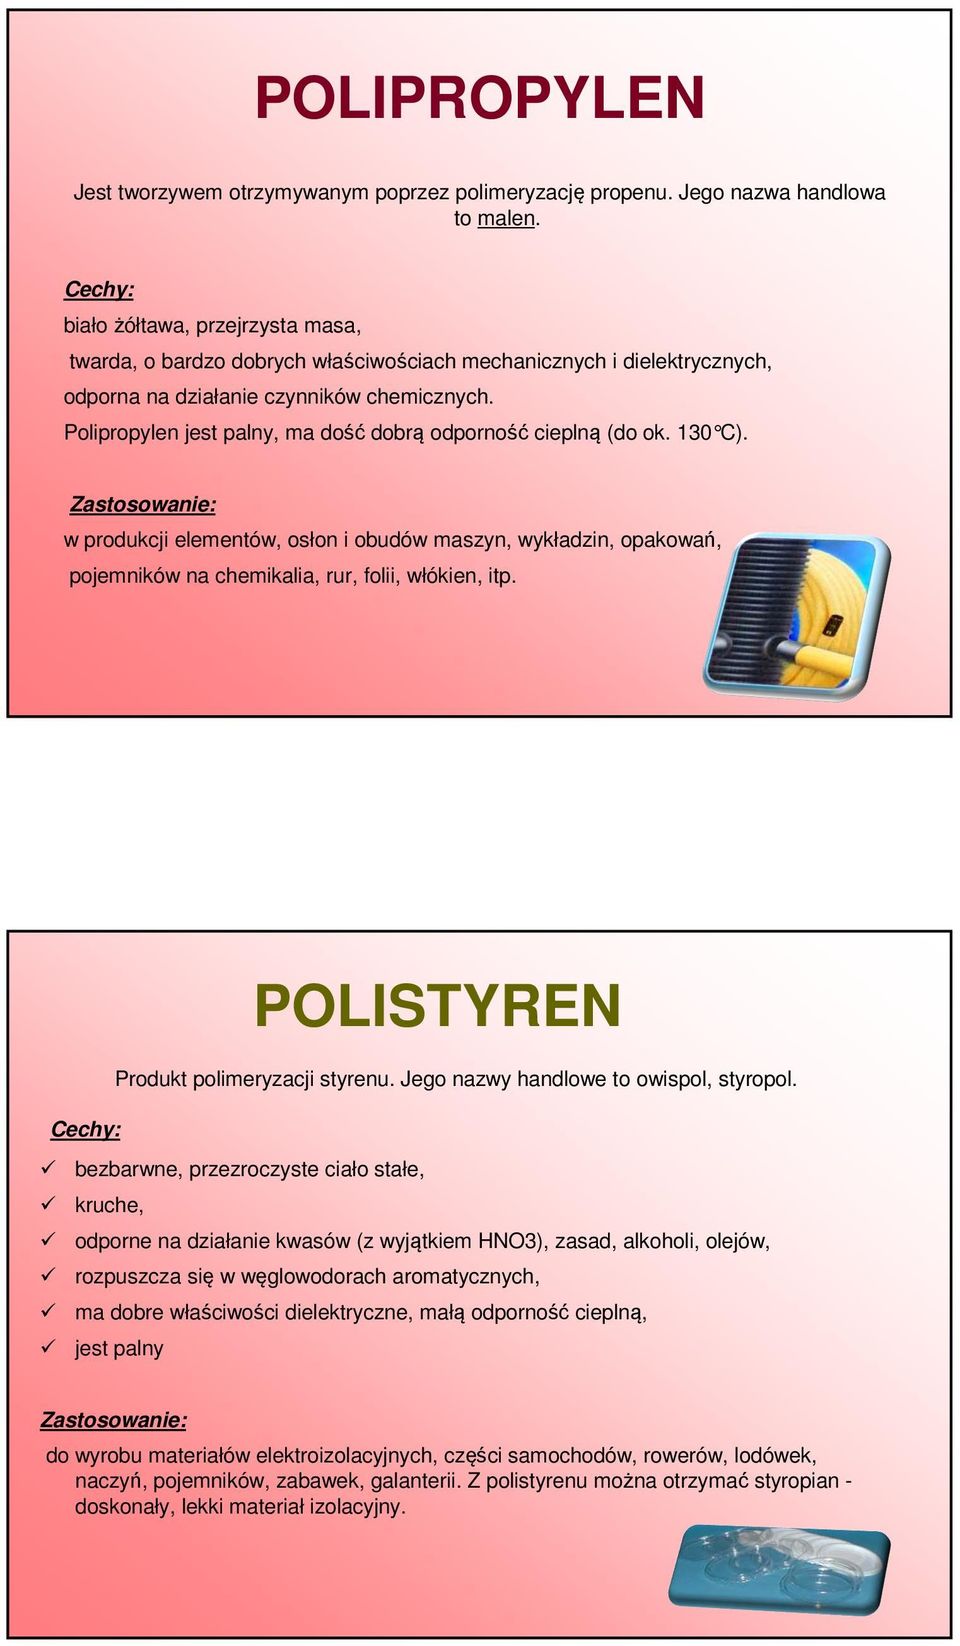 Polipropylen jest palny, ma dość dobrą odporność cieplną (do ok. 130 C). w produkcji elementów, osłon i obudów maszyn, wykładzin, opakowań, pojemników na chemikalia, rur, folii, włókien, itp.